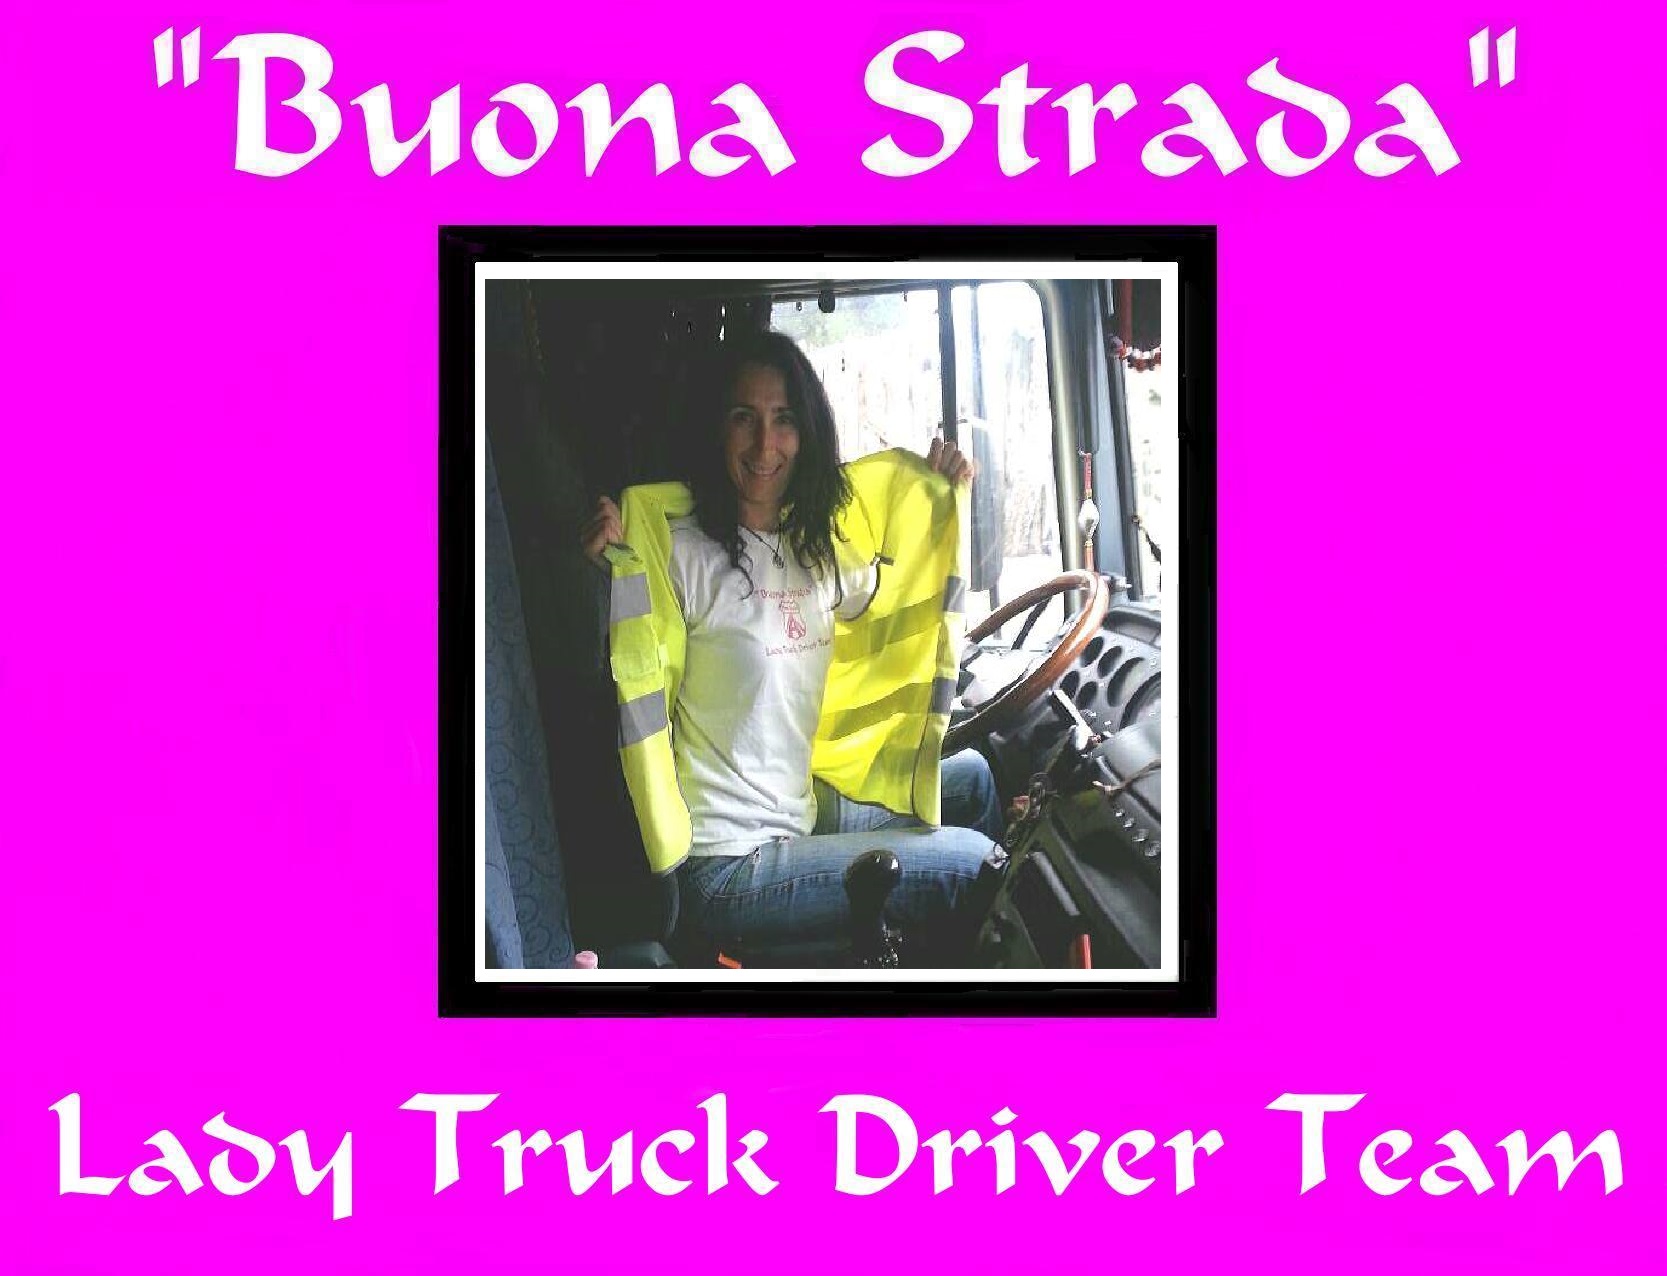 001 Buona strada Lady truck driver team-ok corretto